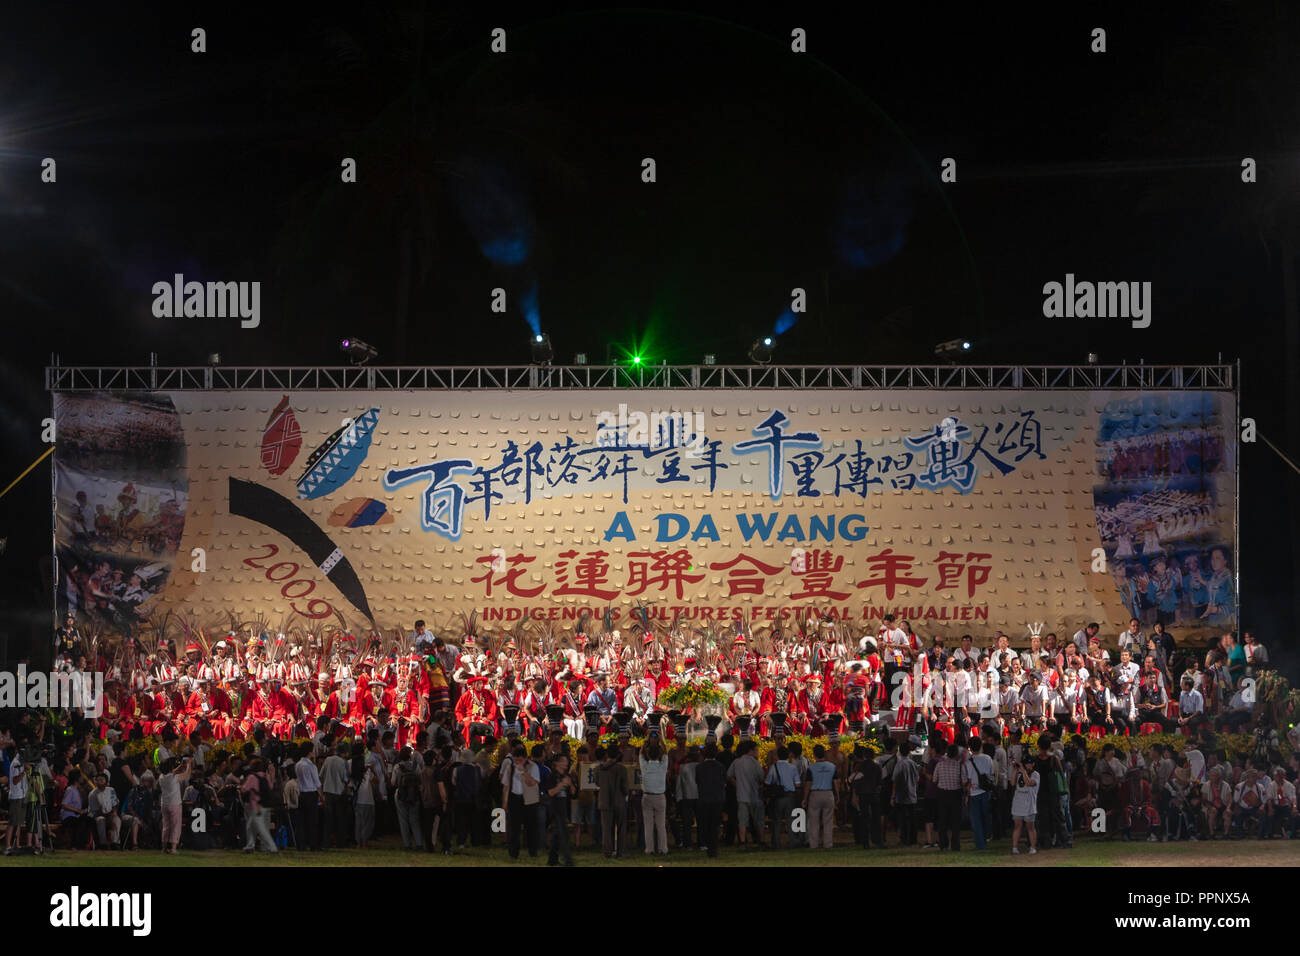 2009' ein DA WANG' indigenen Kulturen Festival (Aboriginal Harvest Festival) in Hualien City, Hualien County, Taiwan Stockfoto